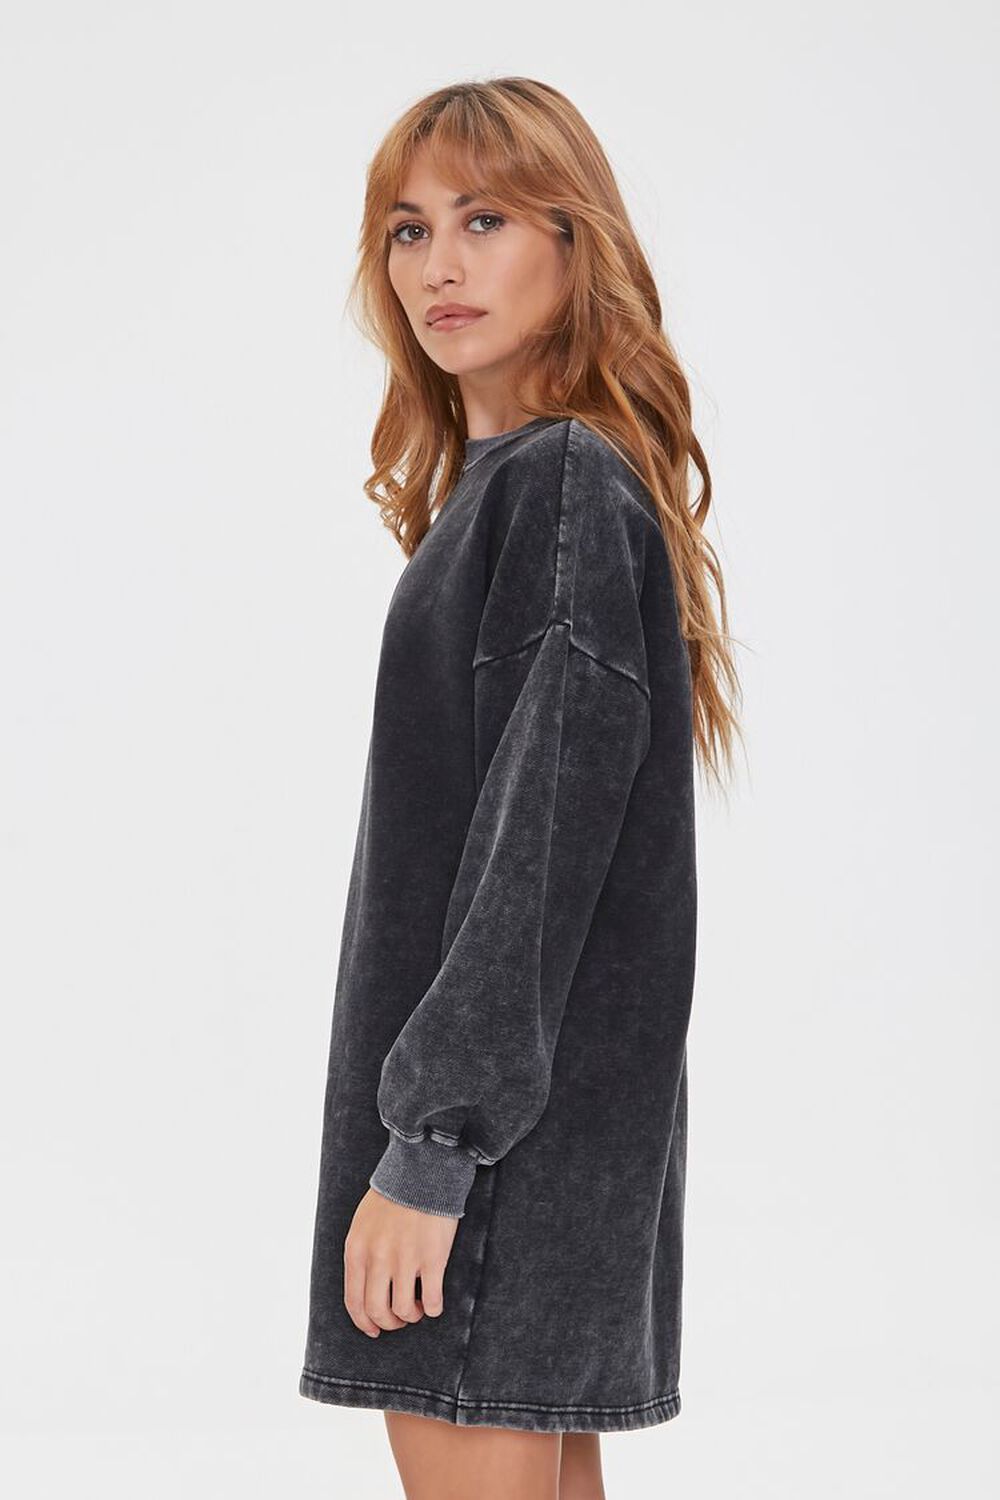 CHARCOAL Fleece Sweatshirt Dress, image 2